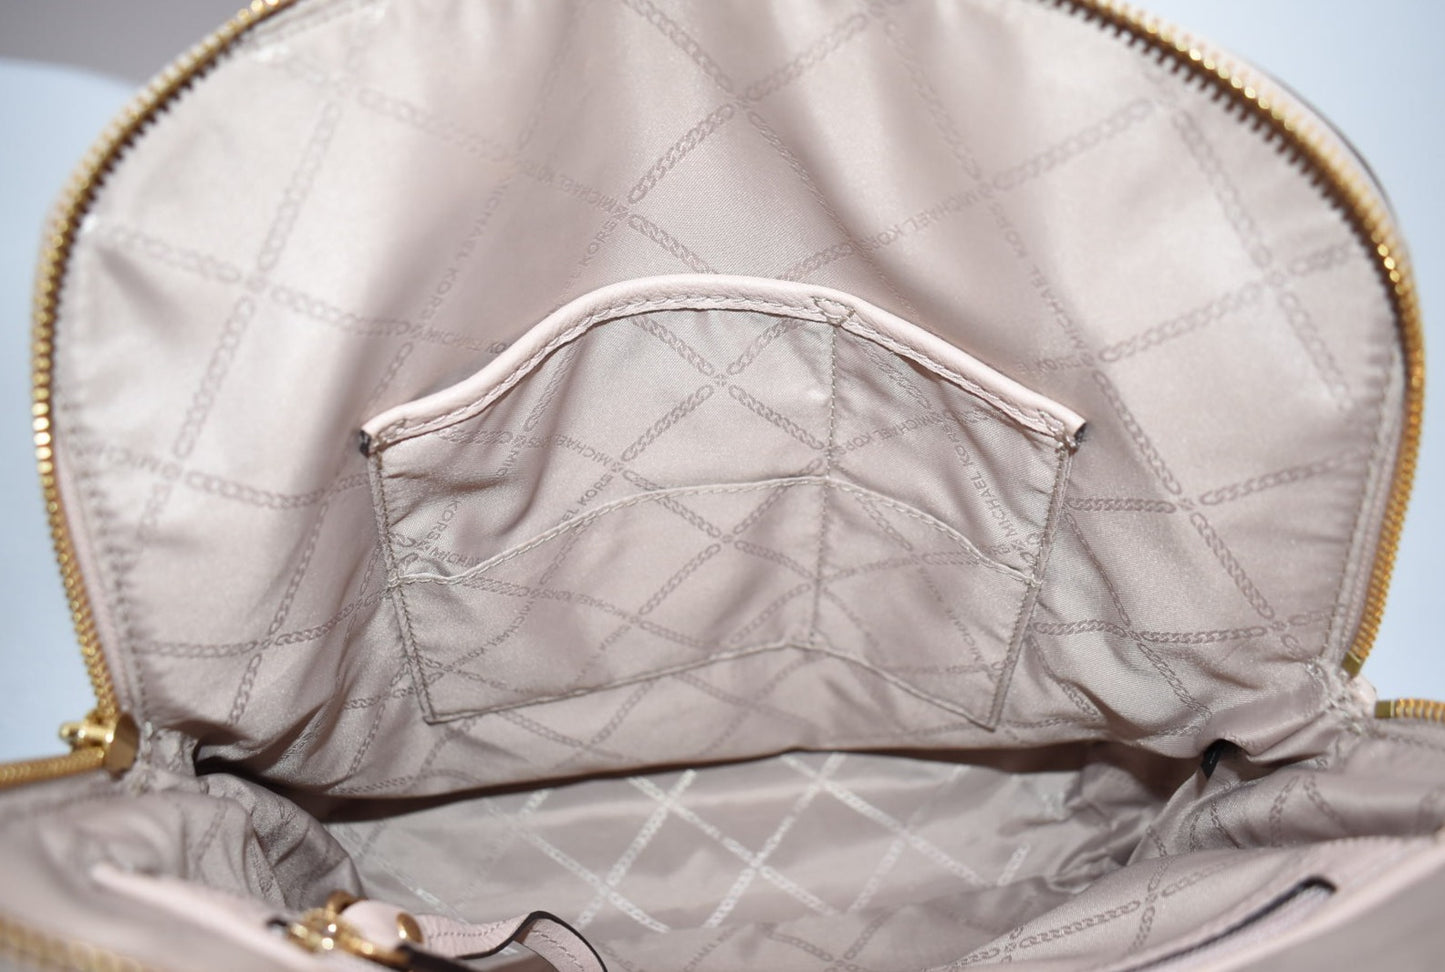 Michael Kors Pebbled Leather Rhea Medium Slim Backpack in Baby Pink